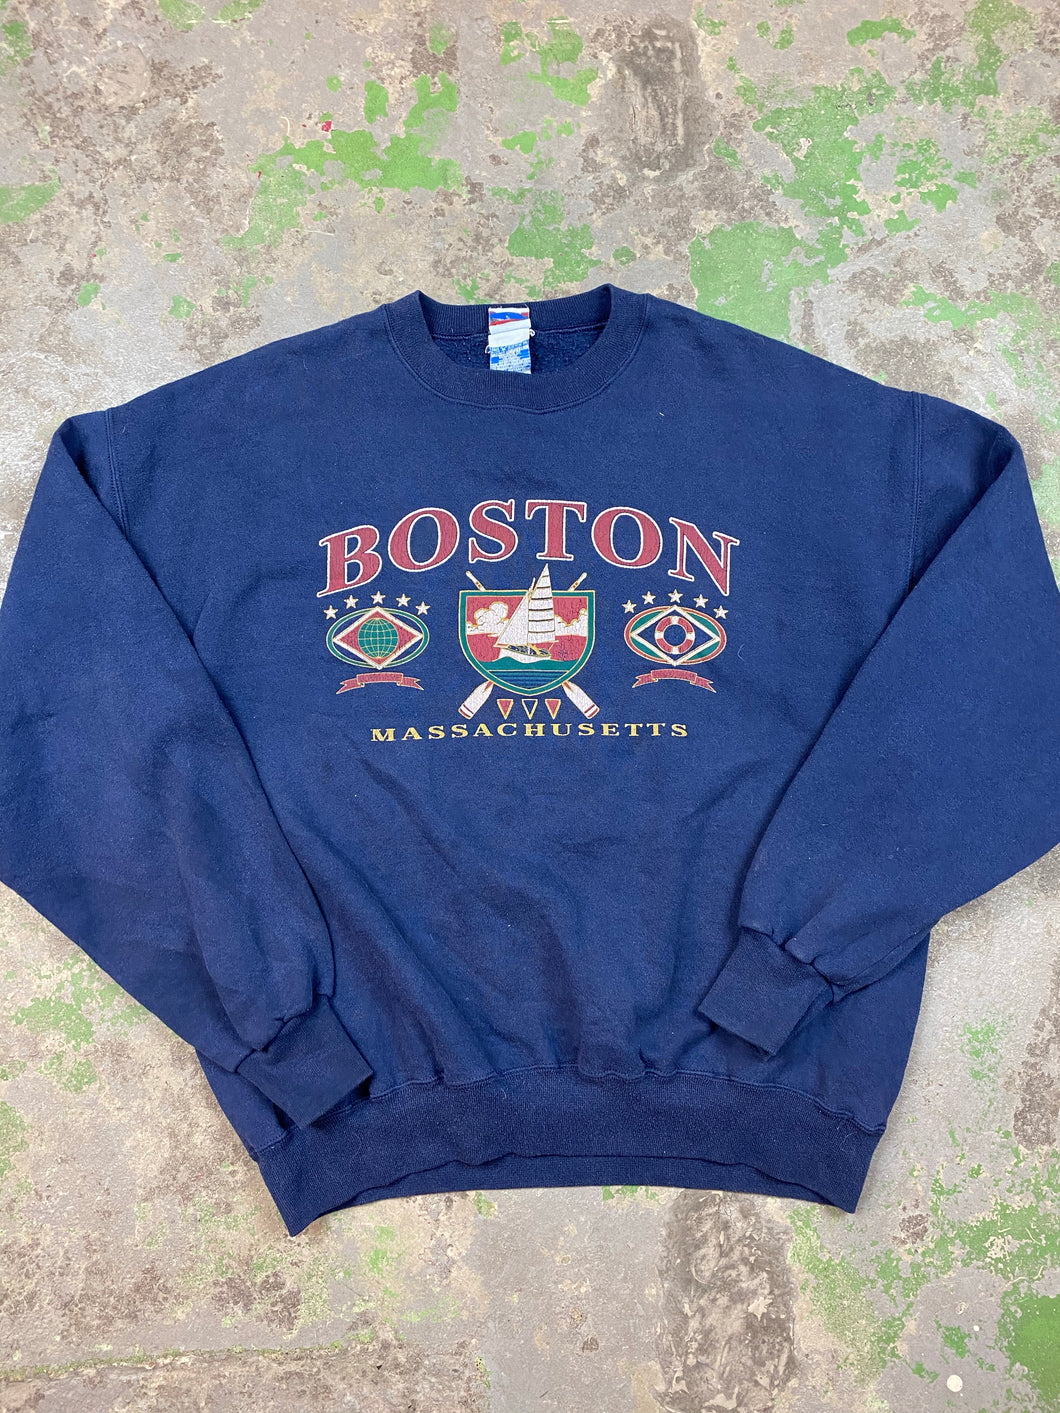 Vintage Boston crewneck